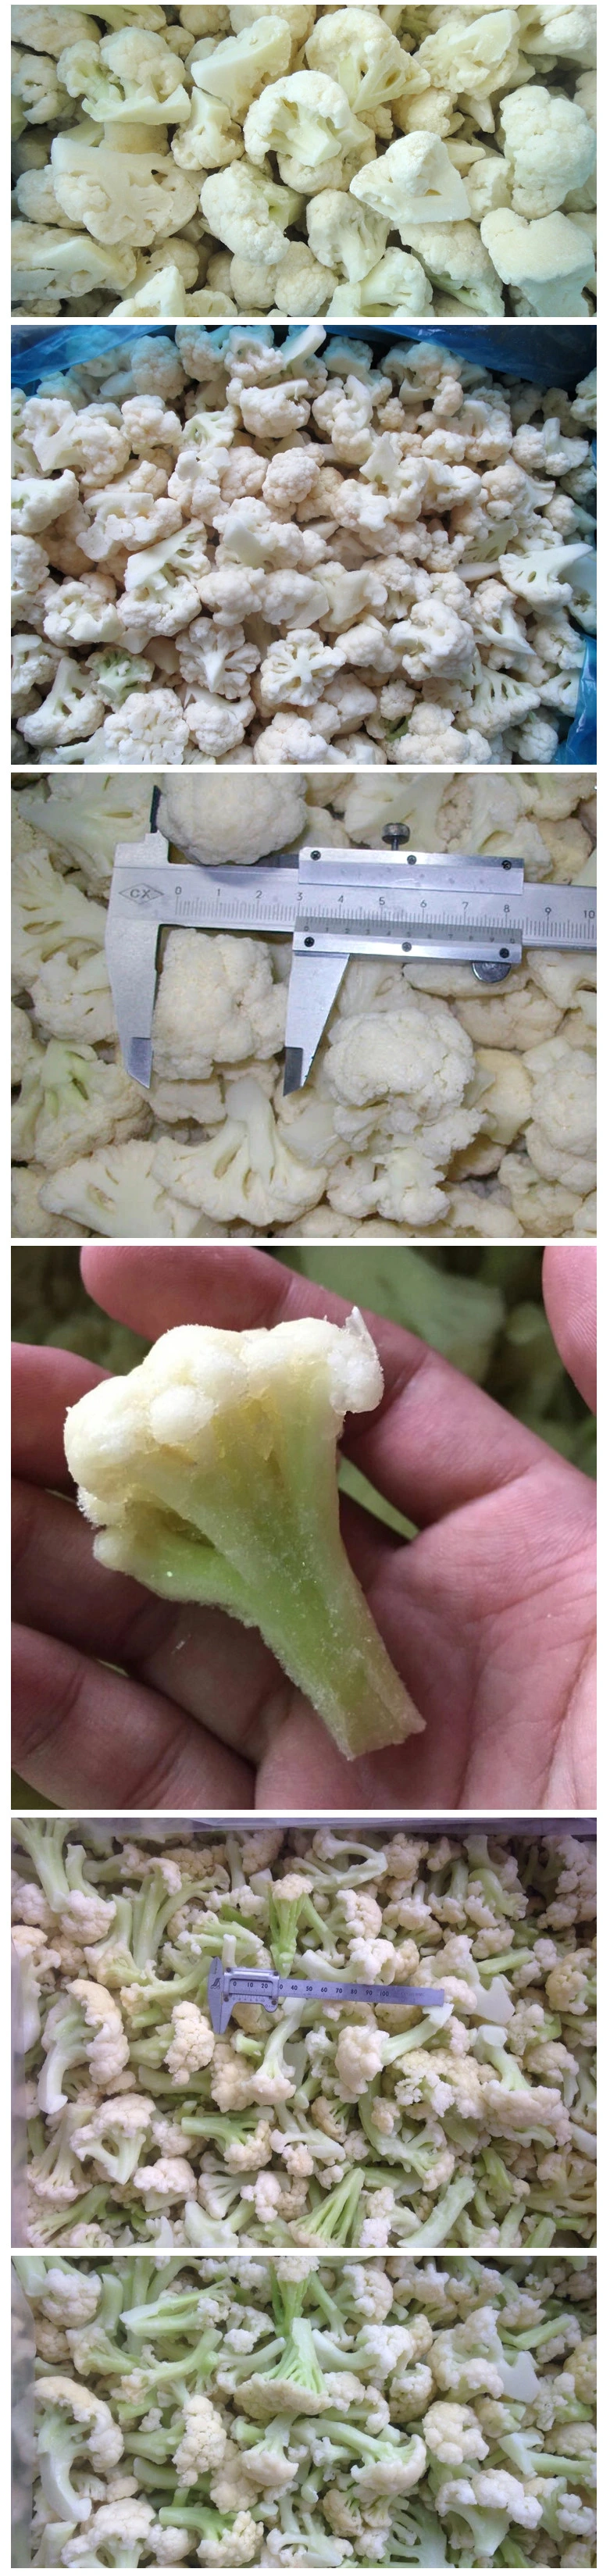 Hot Sale Frozen Cauliflowers Grade a, China IQF Cauliflower, Chinese